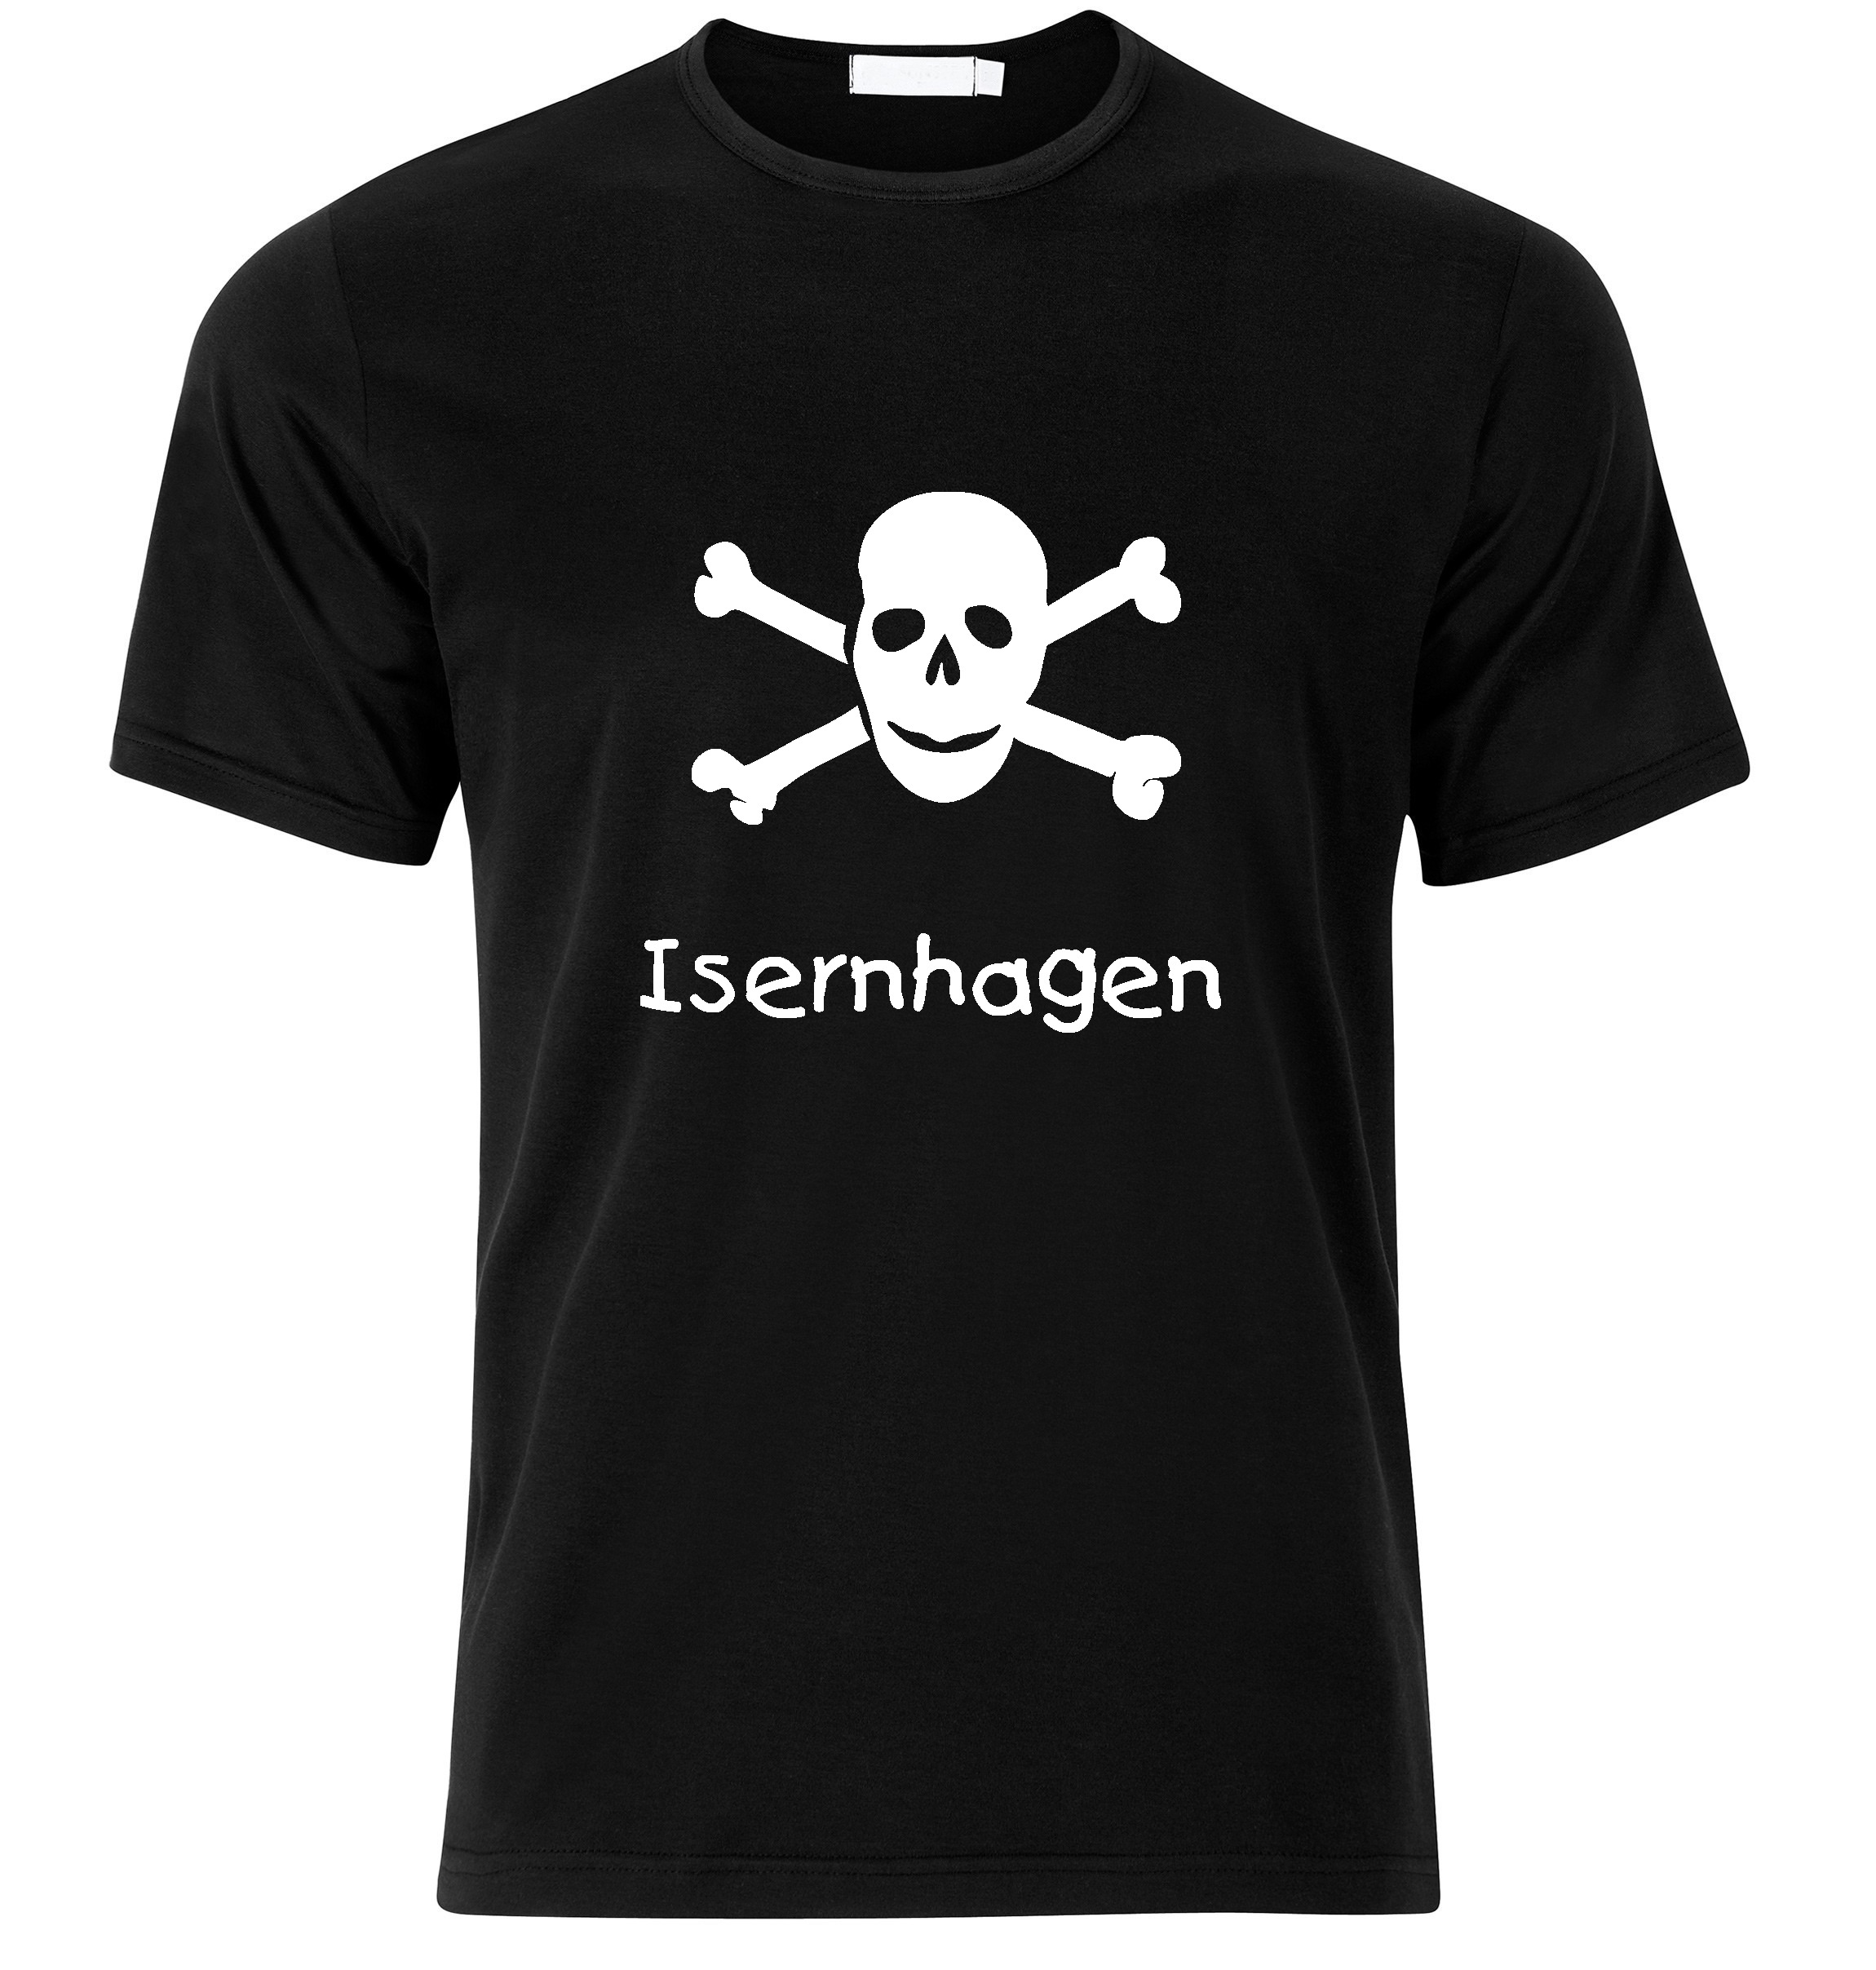 T-Shirt Isernhagen Jolly Roger, Totenkopf